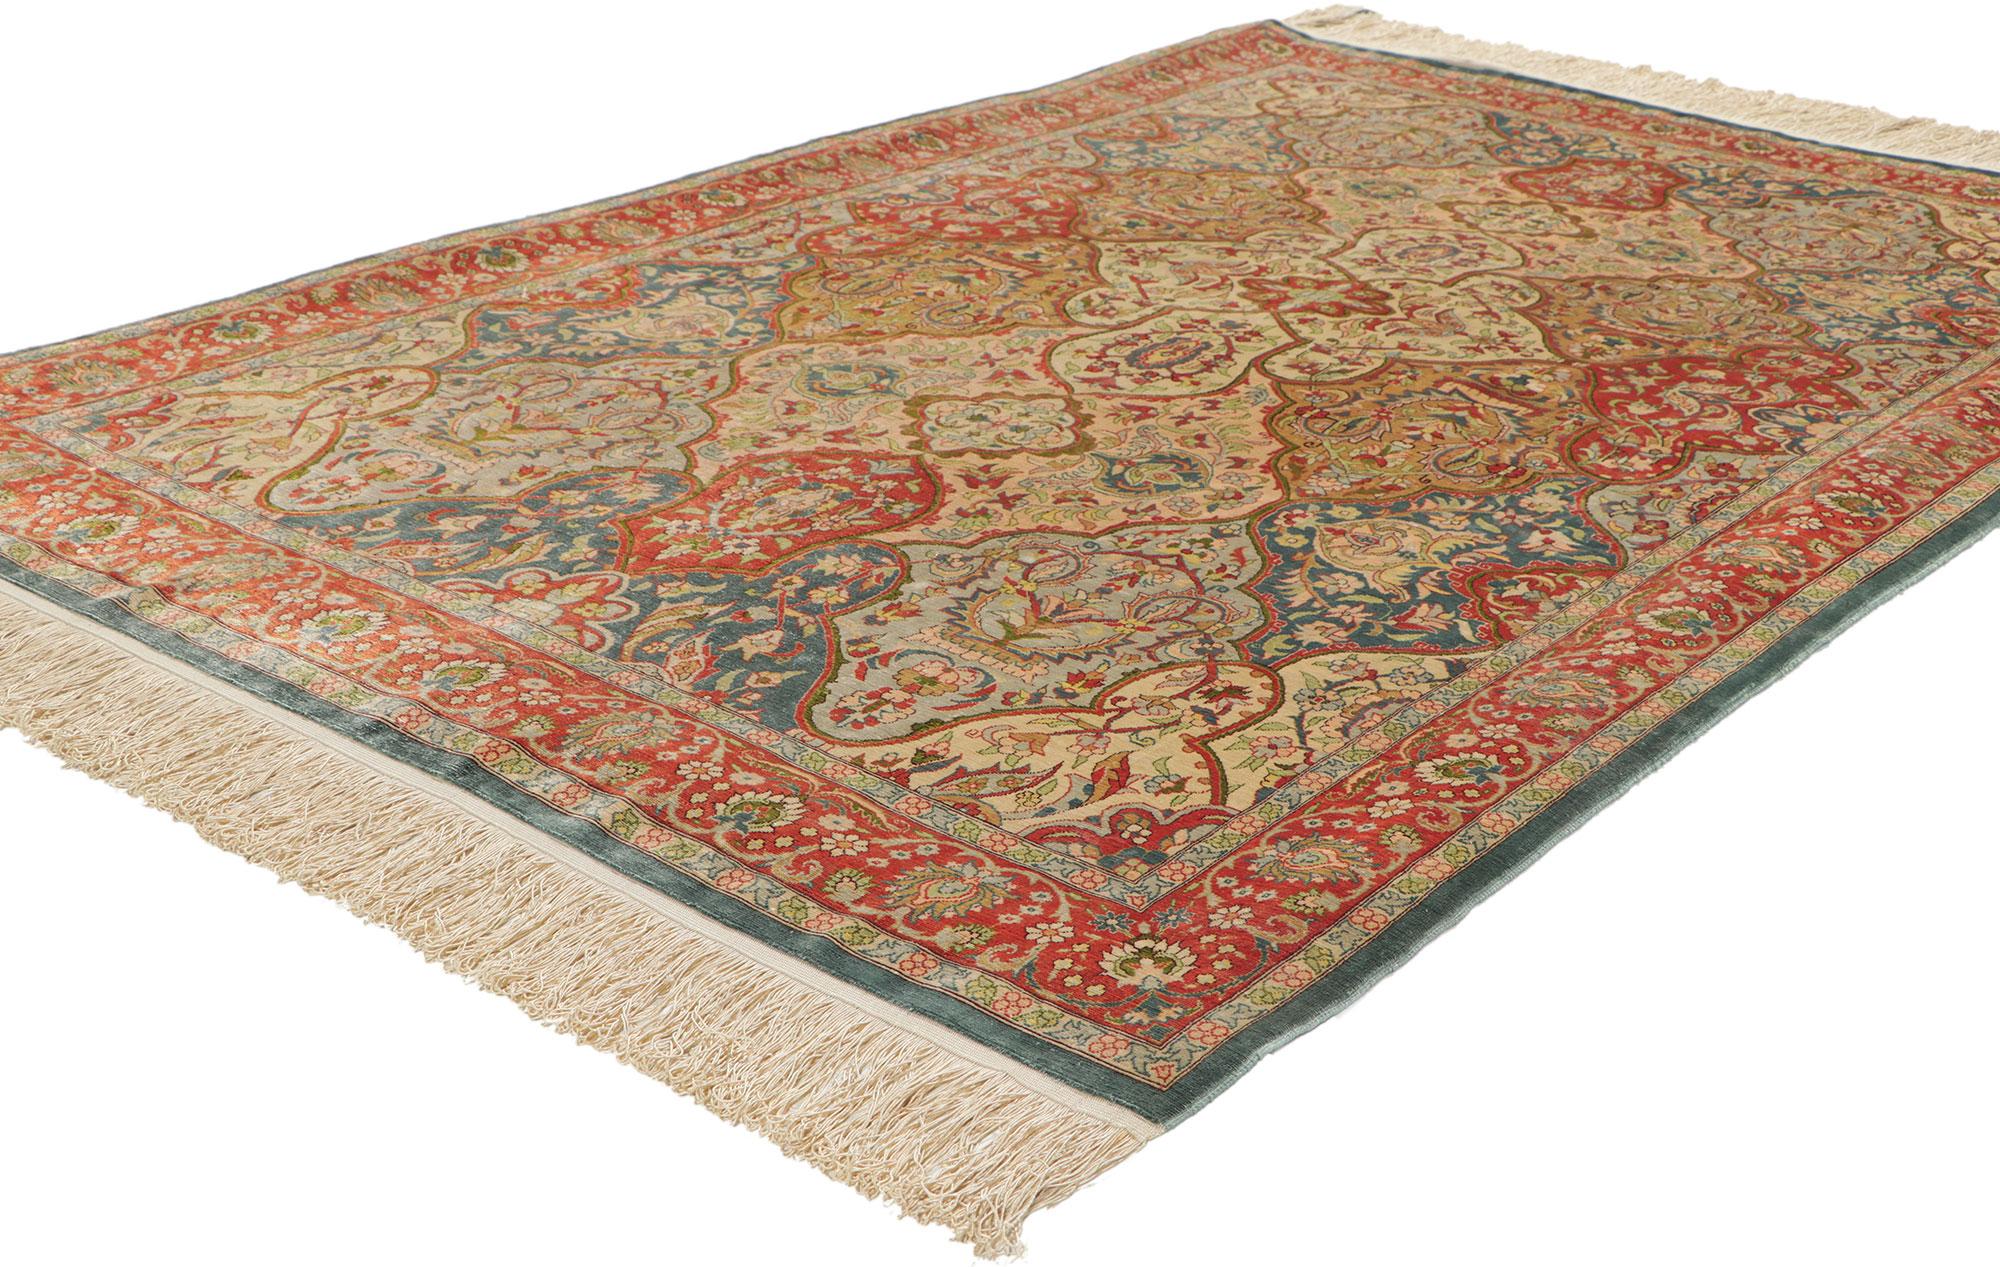 78514 Vintage Türkische Seide Hereke Teppich, 03'06 x 05'05. Dieser handgeknüpfte türkische Hereke-Teppich aus Seide mit unglaublichen Details und Texturen ist eine faszinierende Vision gewebter Schönheit. Das seltene Gartenfliesendesign und die